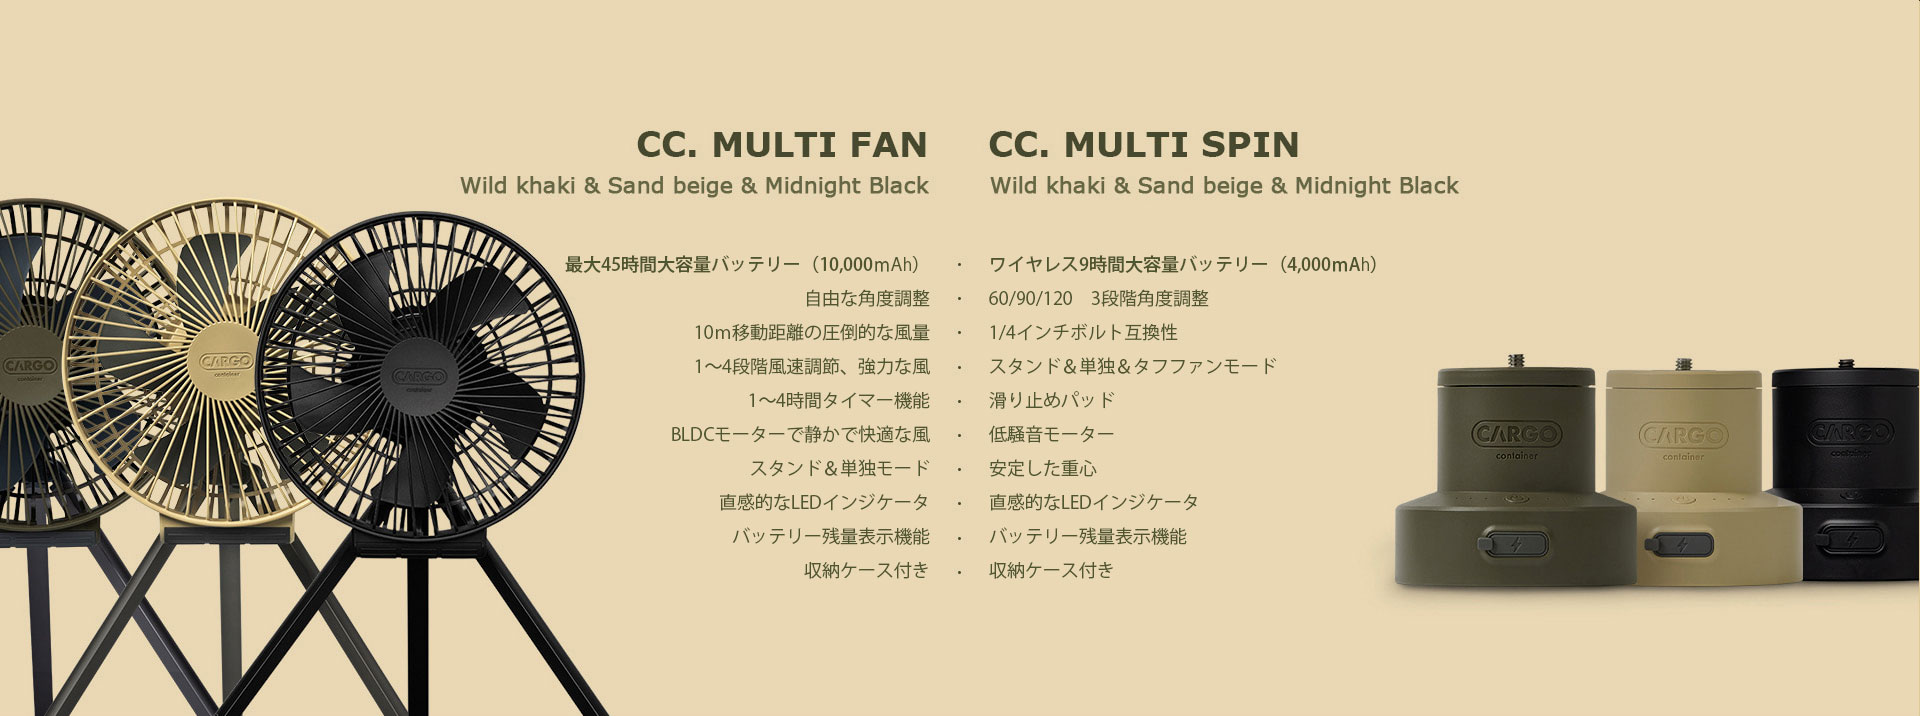 CC.MULTI FANとCC.MULTI SPIN